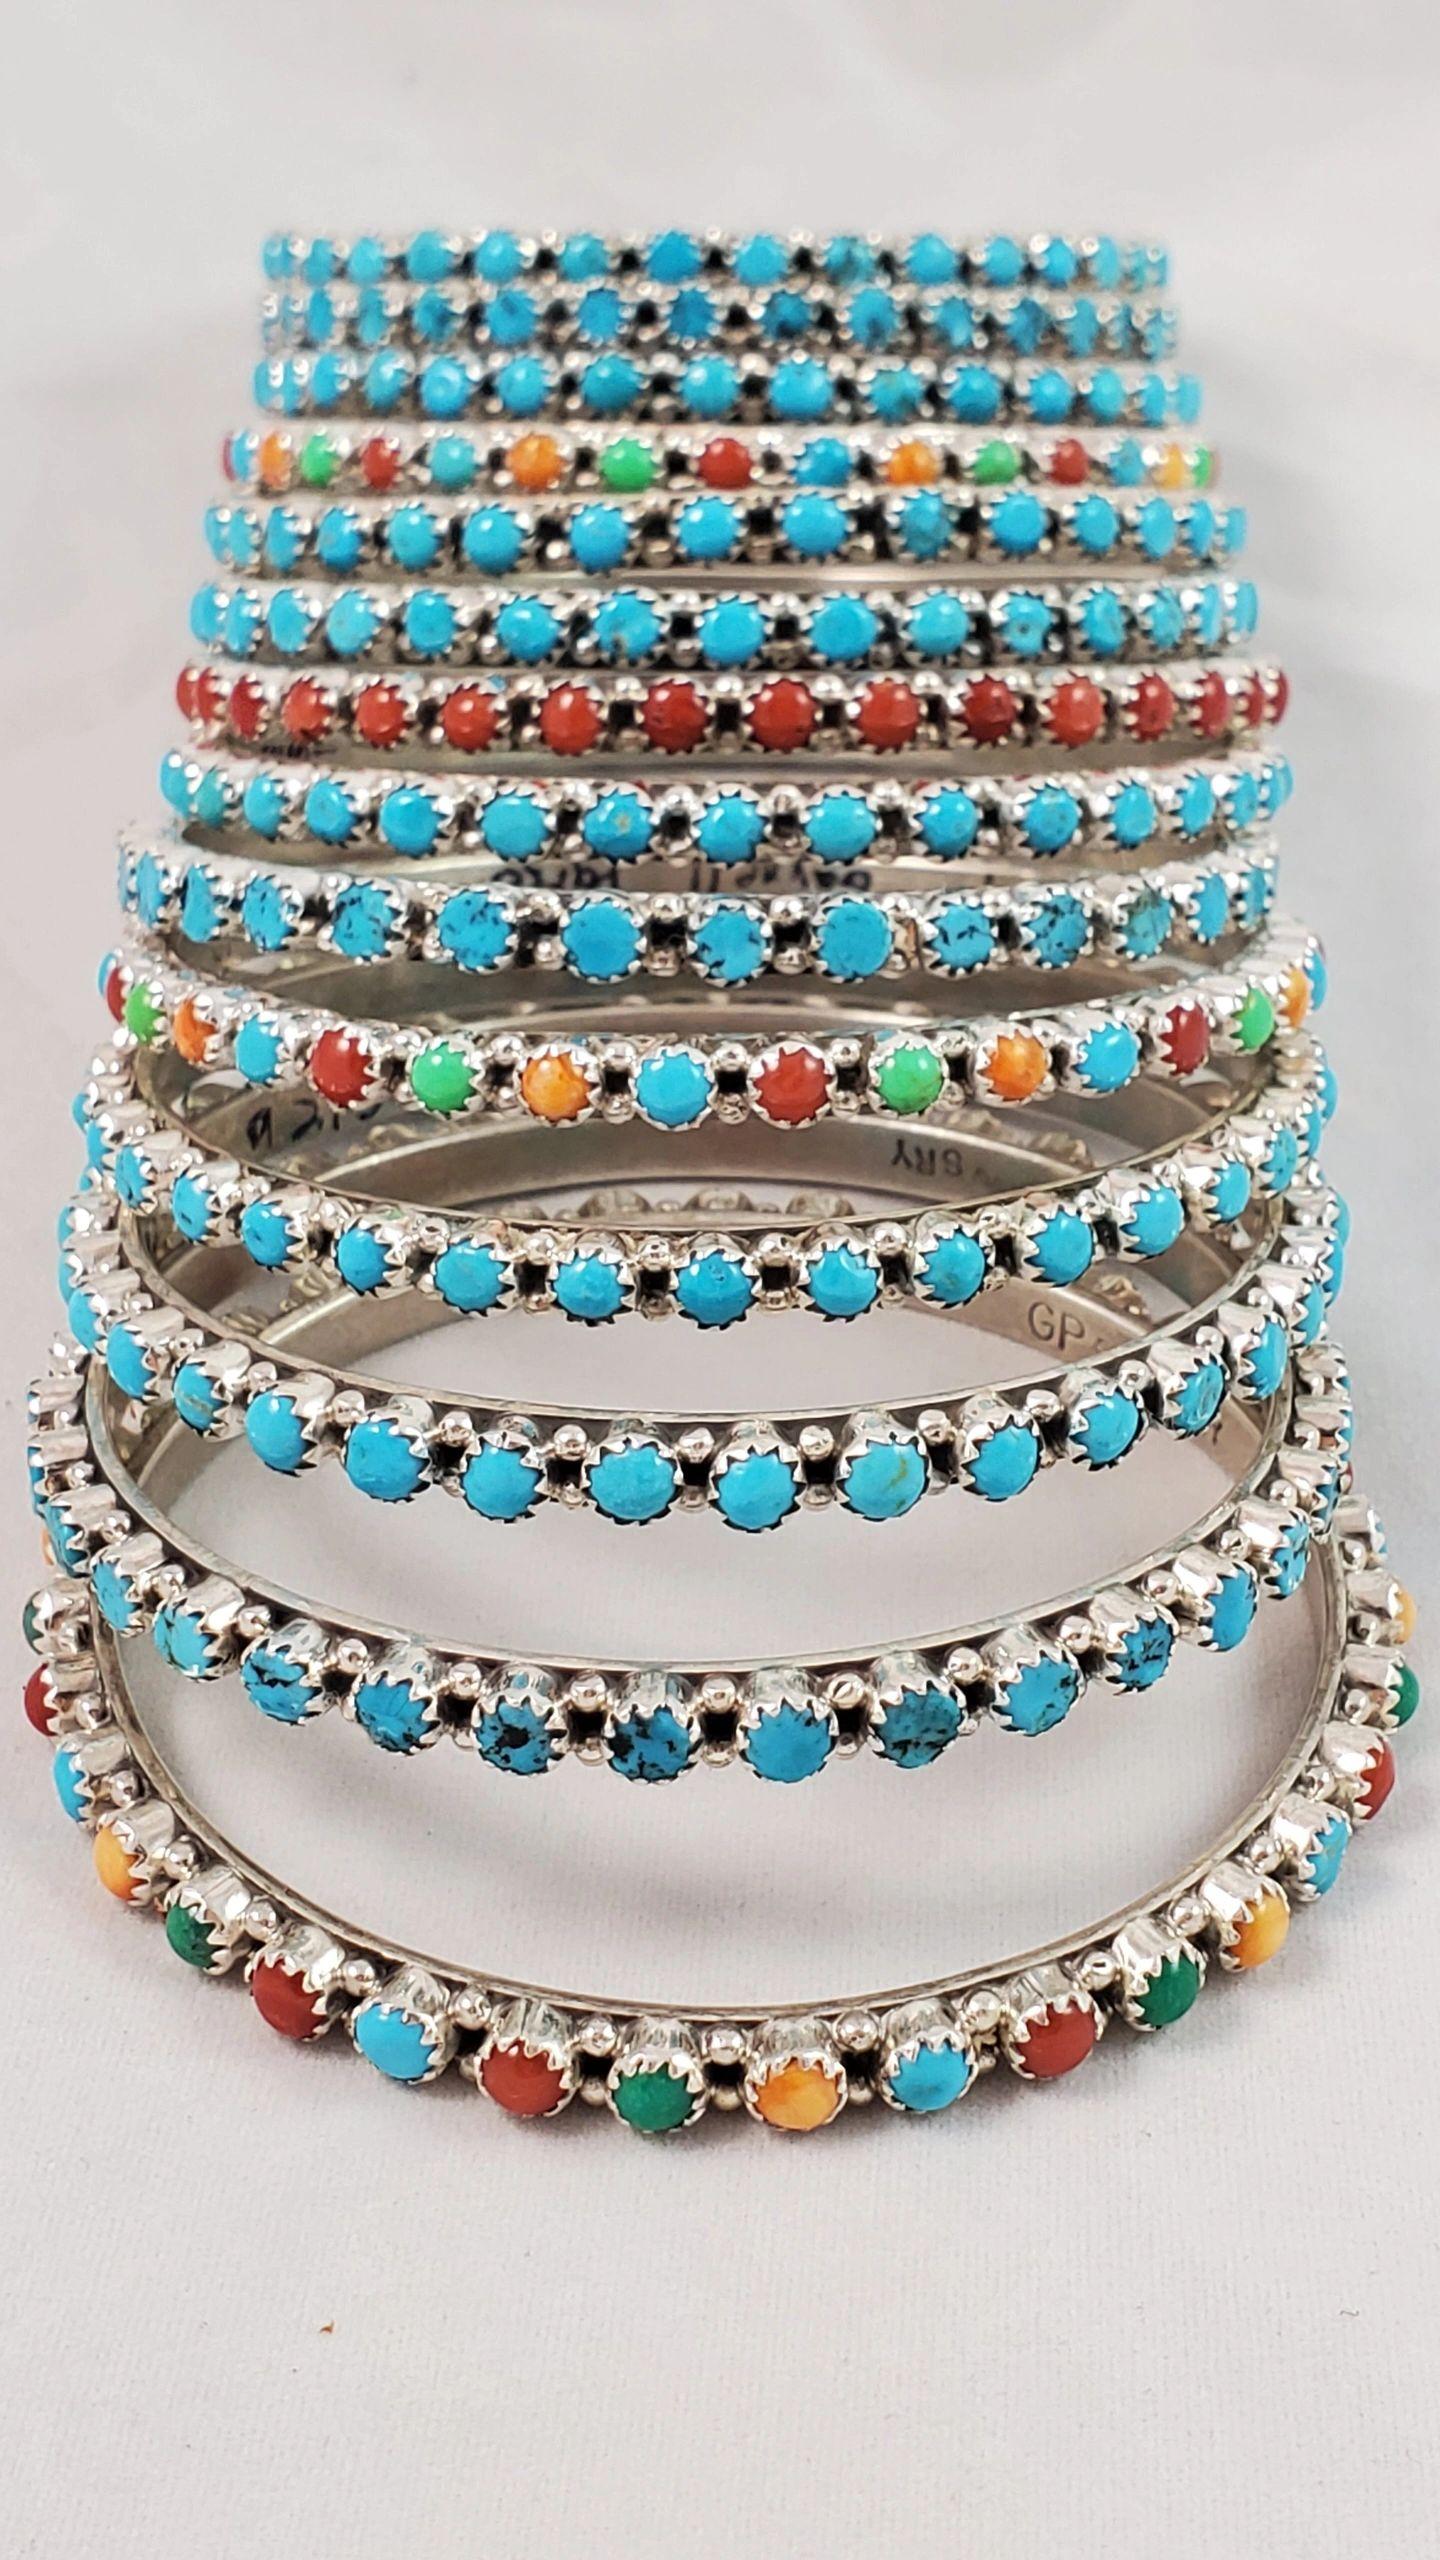 Turquoise dot bangle bracelet - Albuquerque Pawn Shop